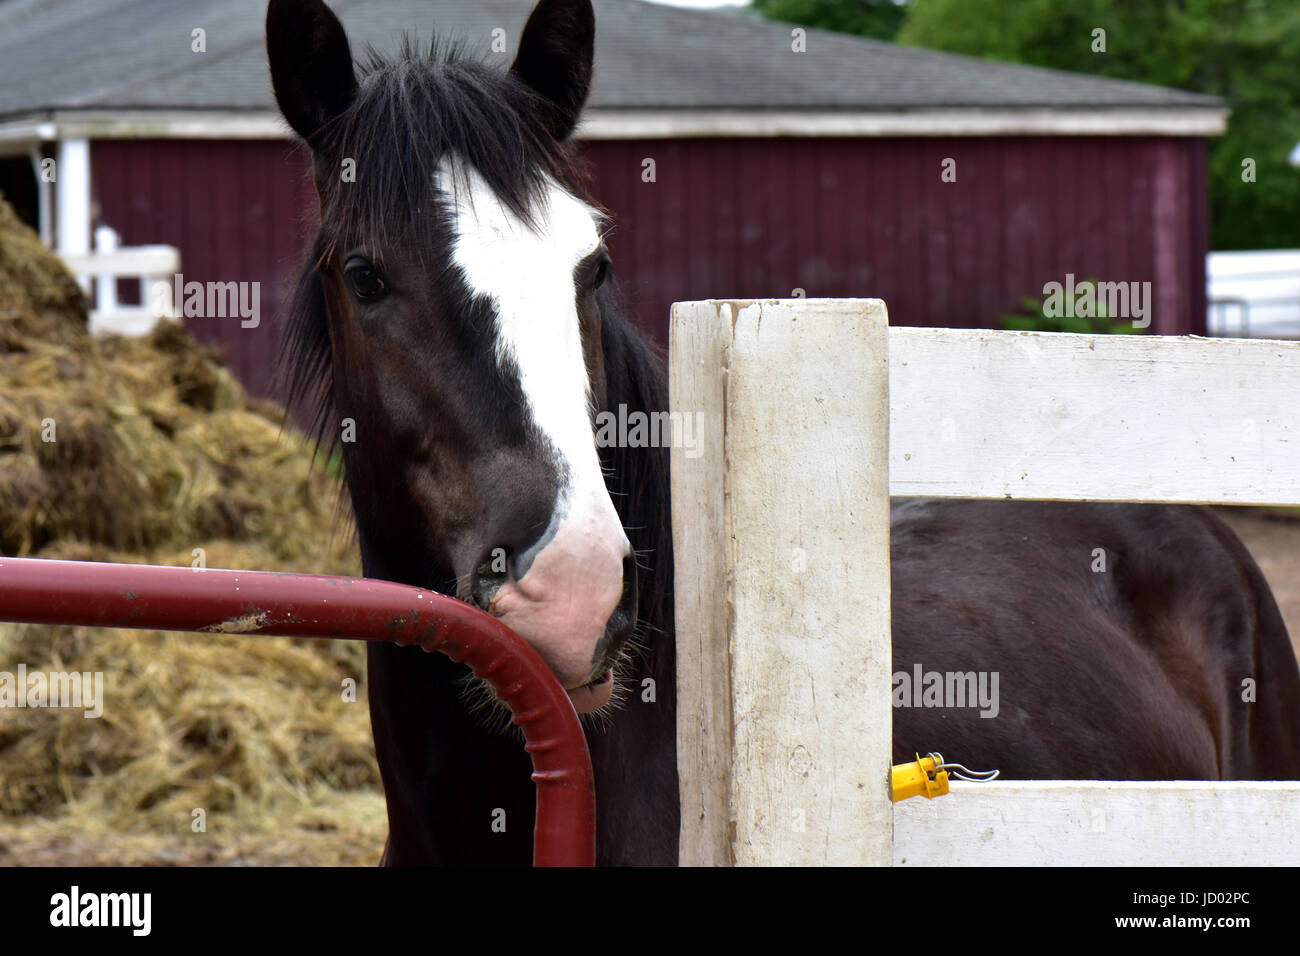 A cavallo di un equino progetto horse farm rescue godono di libertà e di pace. Foto Stock